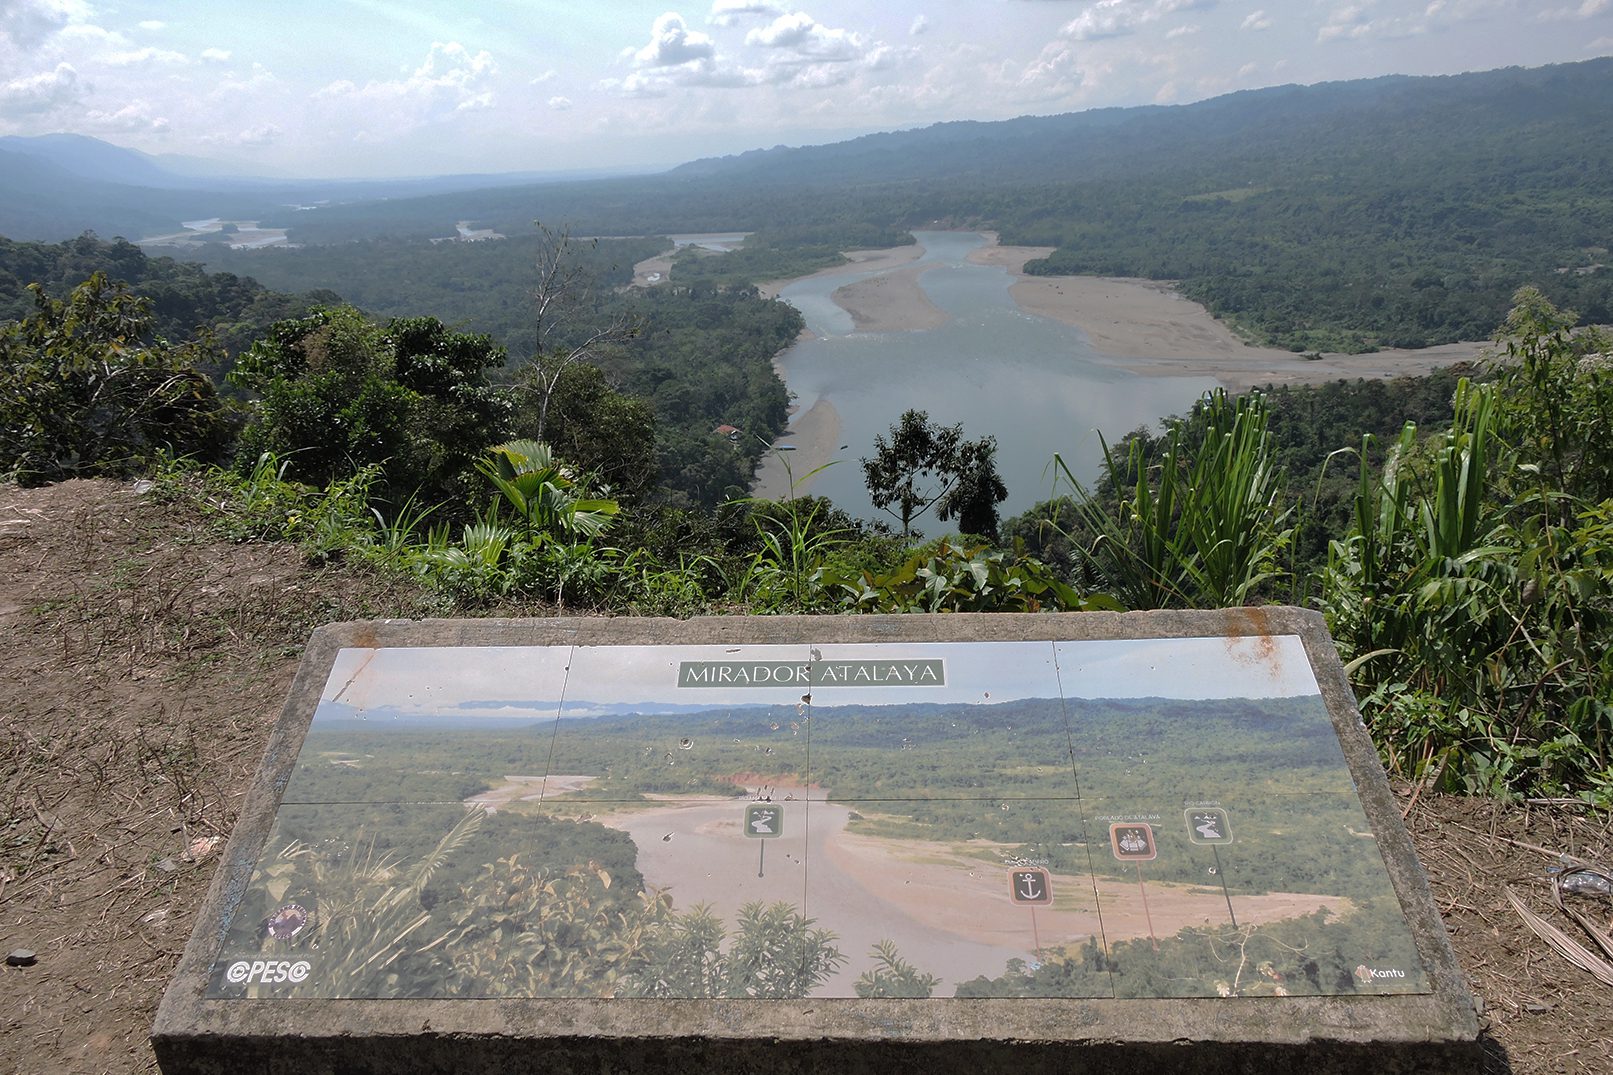 Viewpoint Atalaya